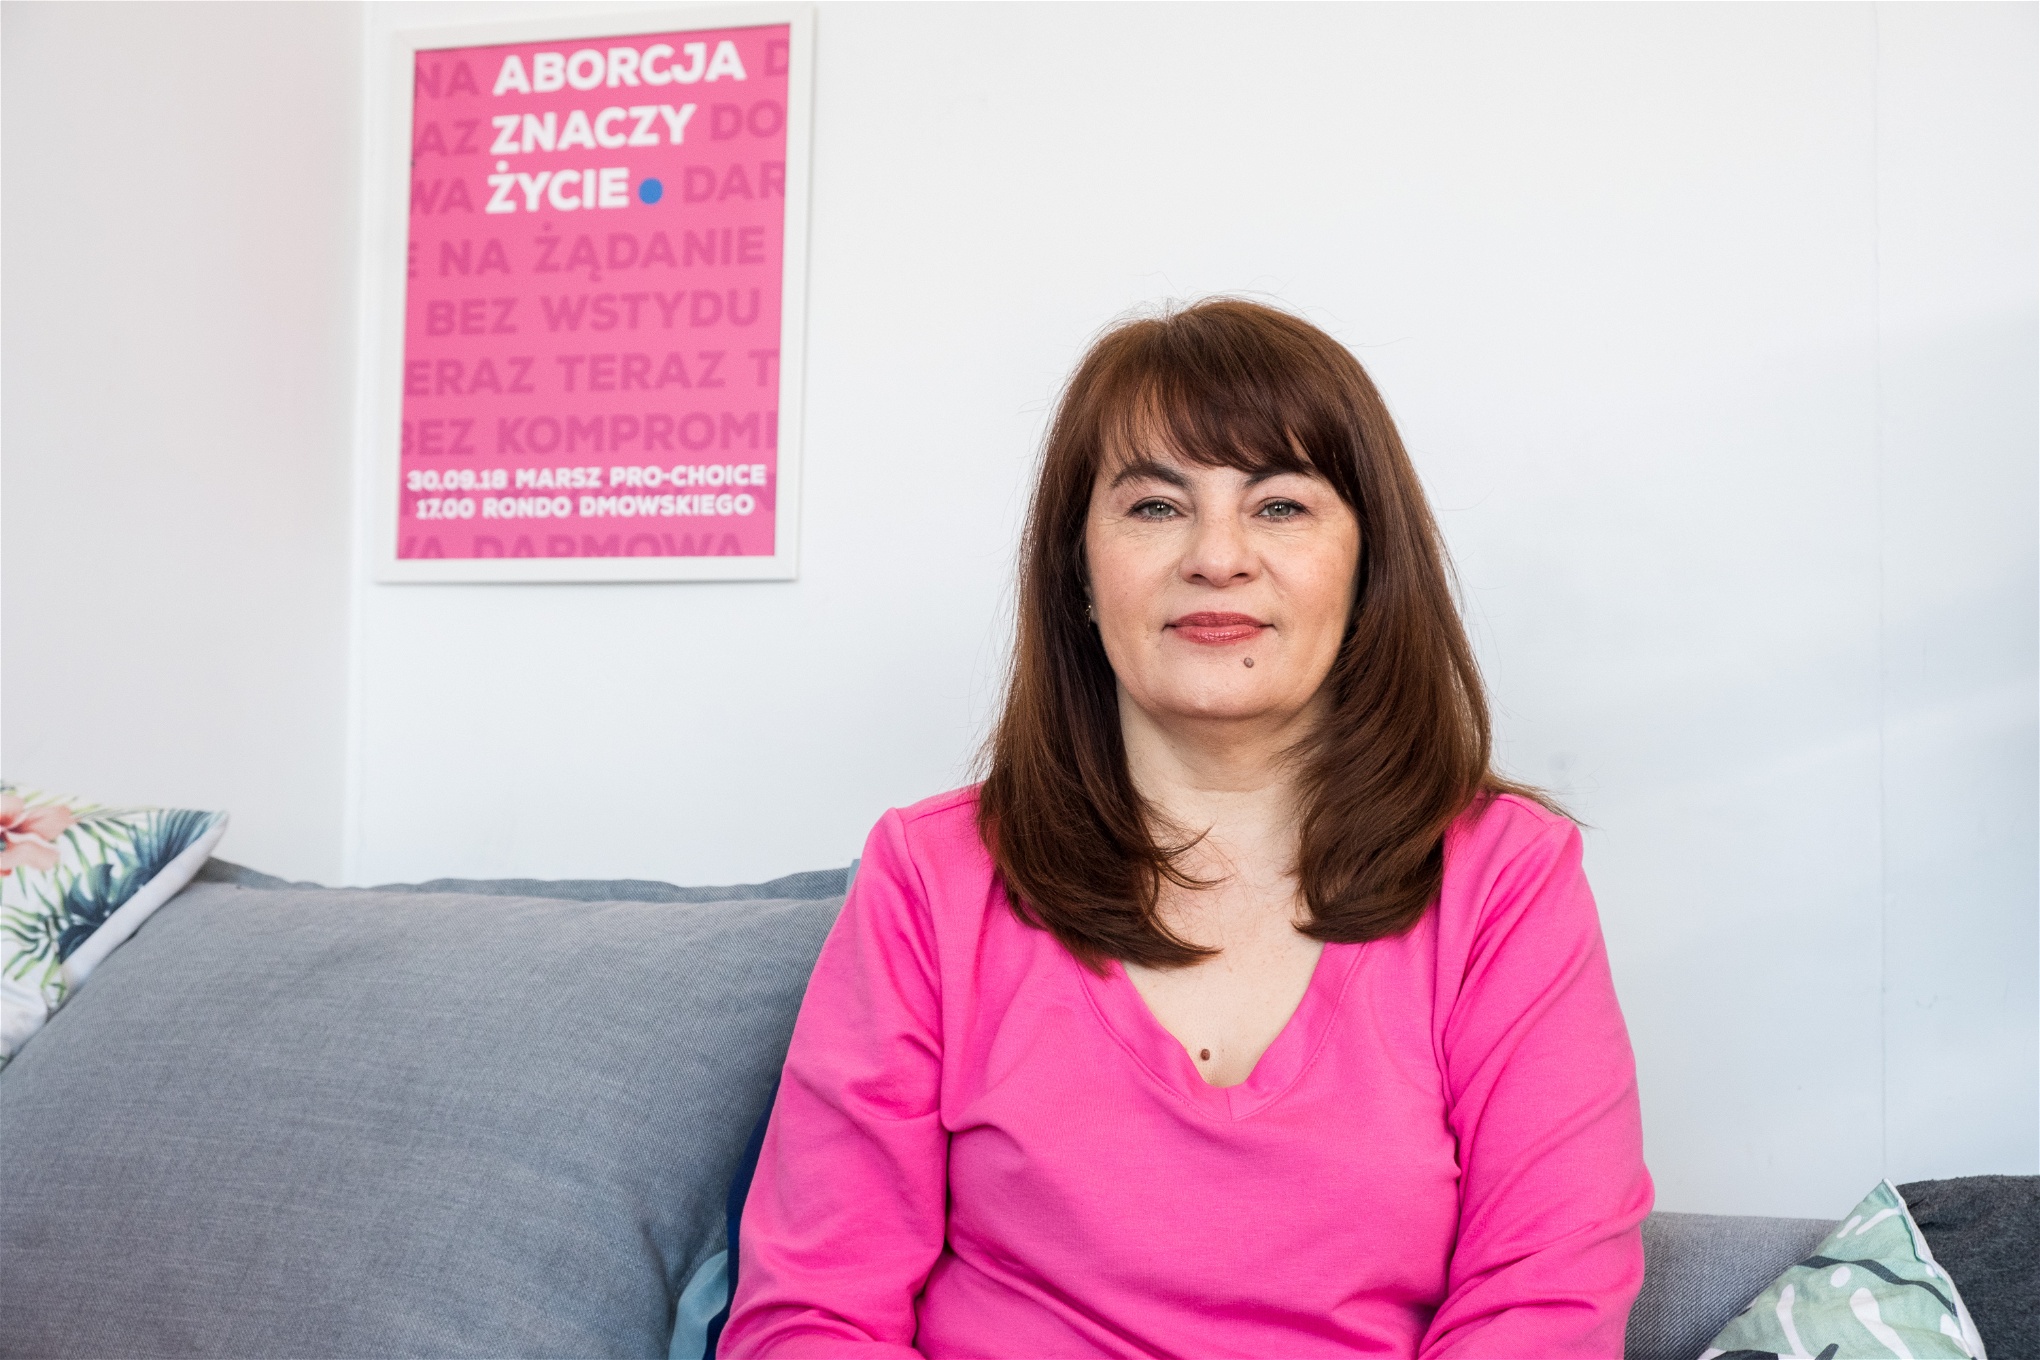 Justyna Wydrzyńska har arbetat för kvinnors rätt till abort i 16 år. Foto: Grzegorz Żukowski